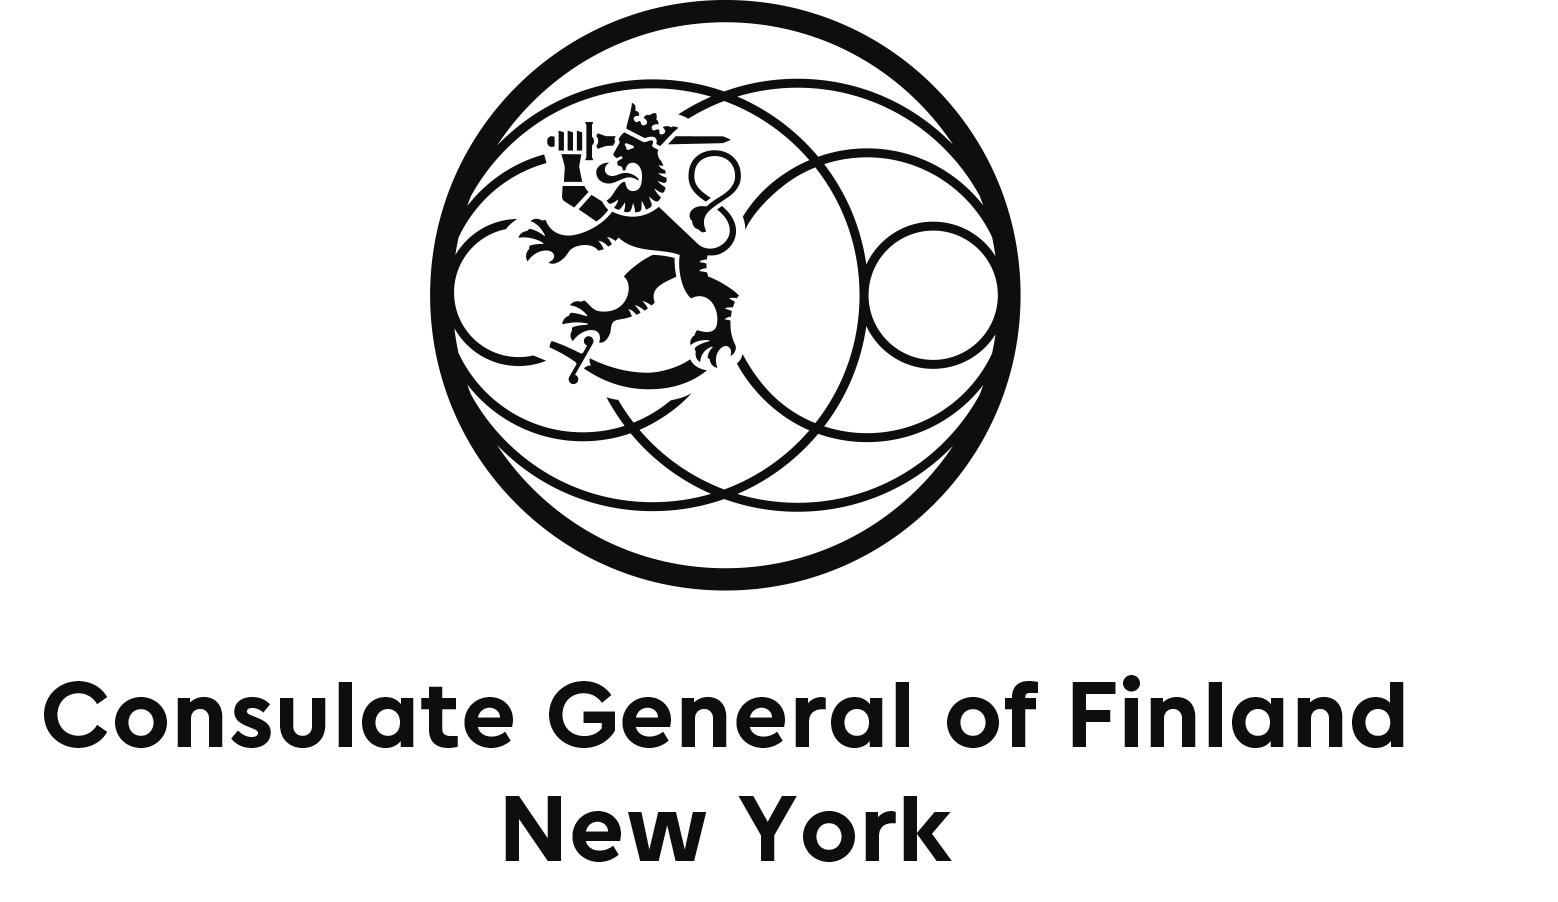 Consulate General Finland Logo